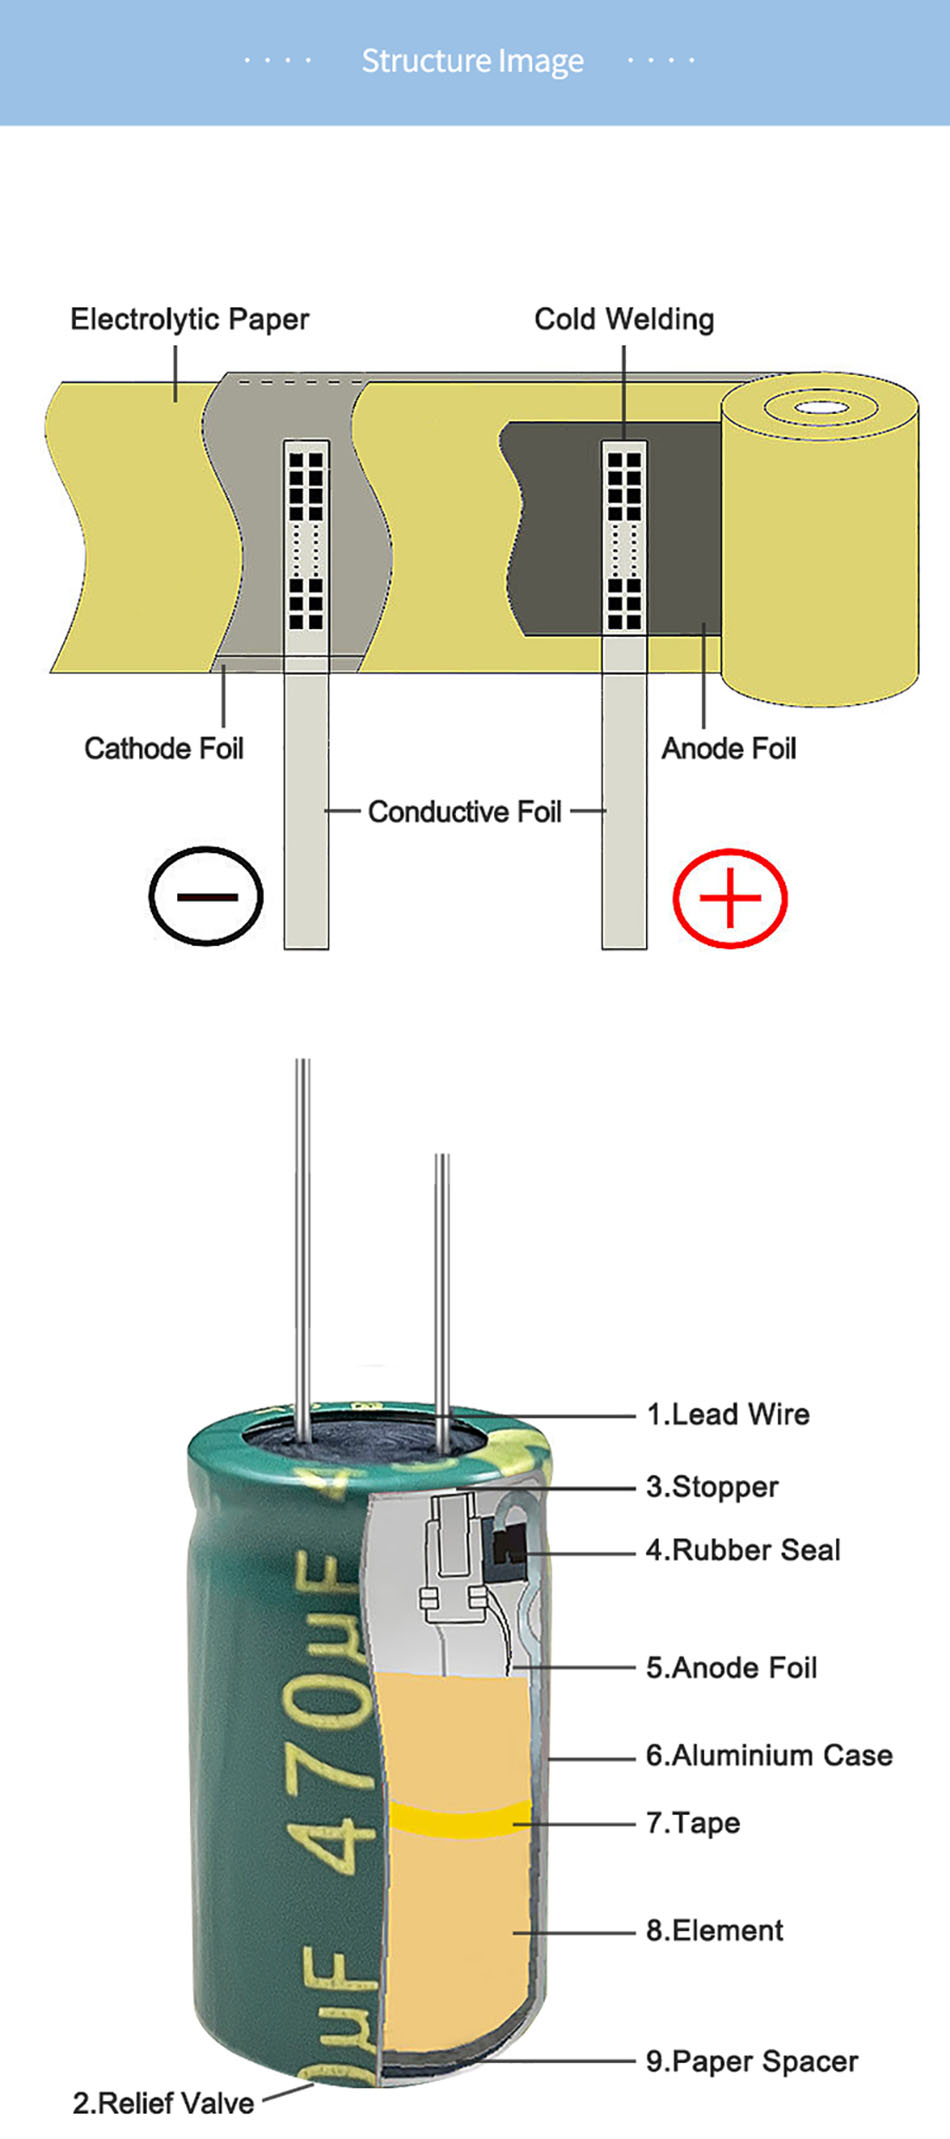 Capacitor Electrolytic Alùmanum (6)